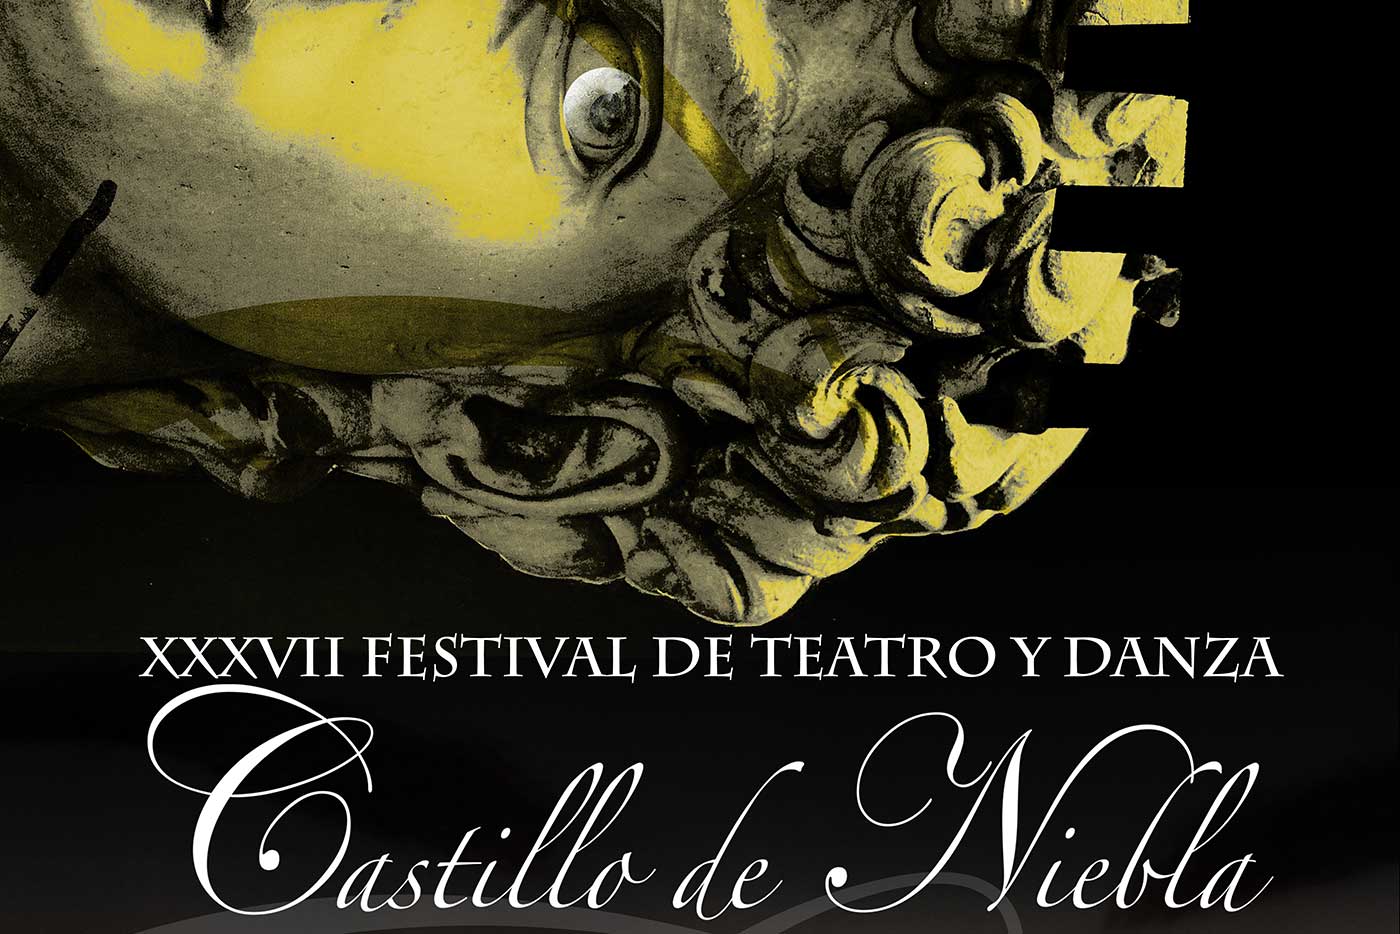 Castillo de Niebla 2022 Festival de Teatro y danza Huelva